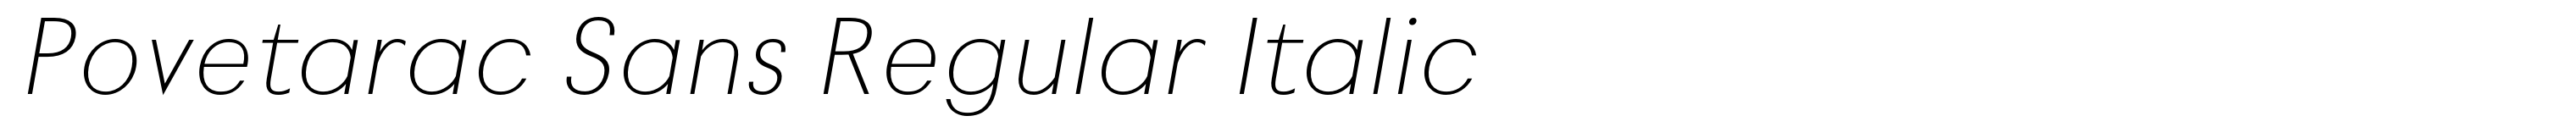 Povetarac Sans Regular Italic